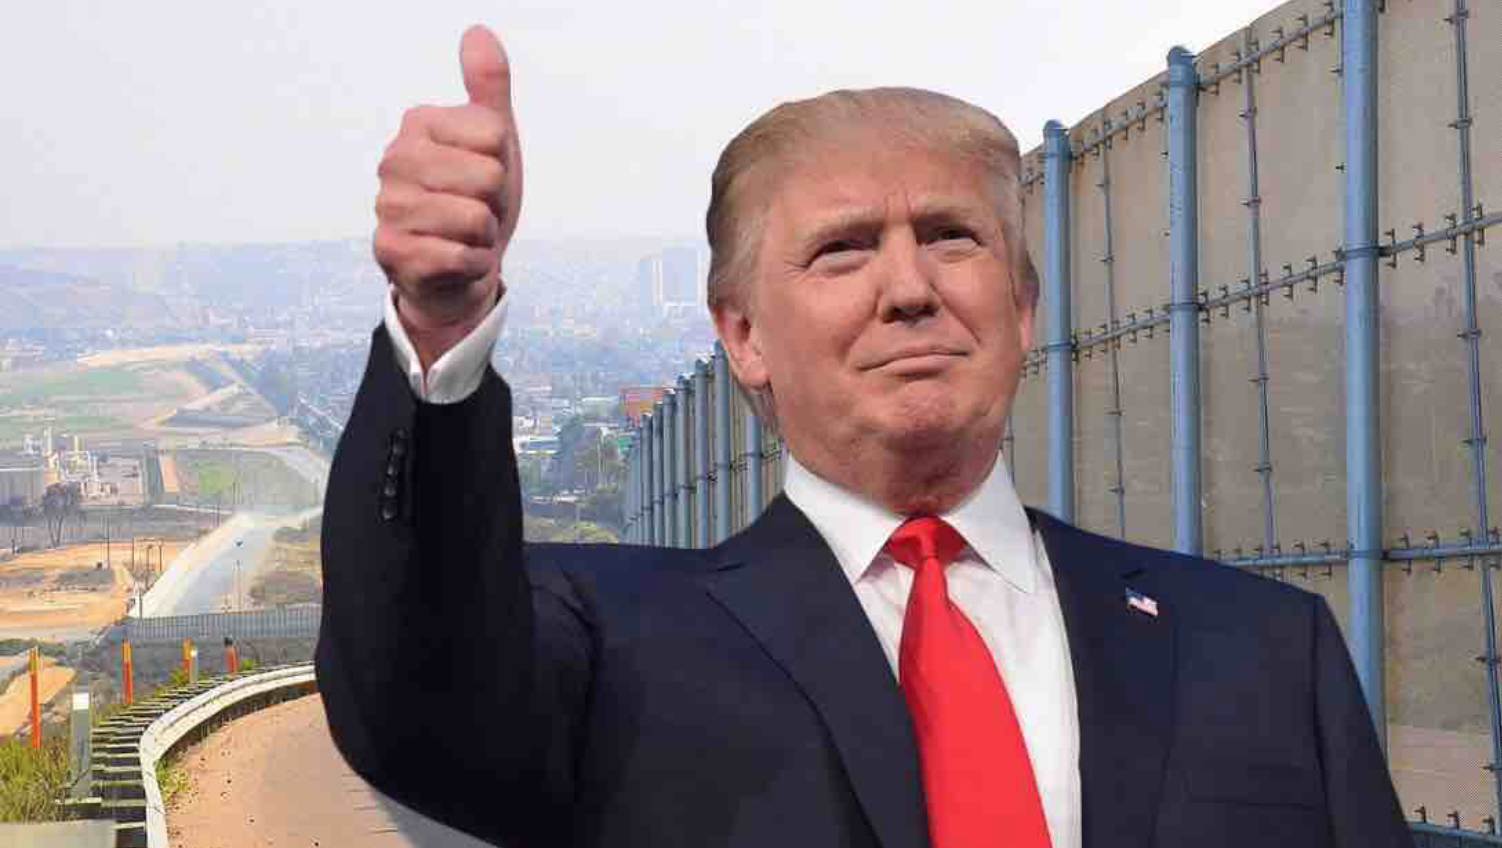 Präsident Trump und die Mauer